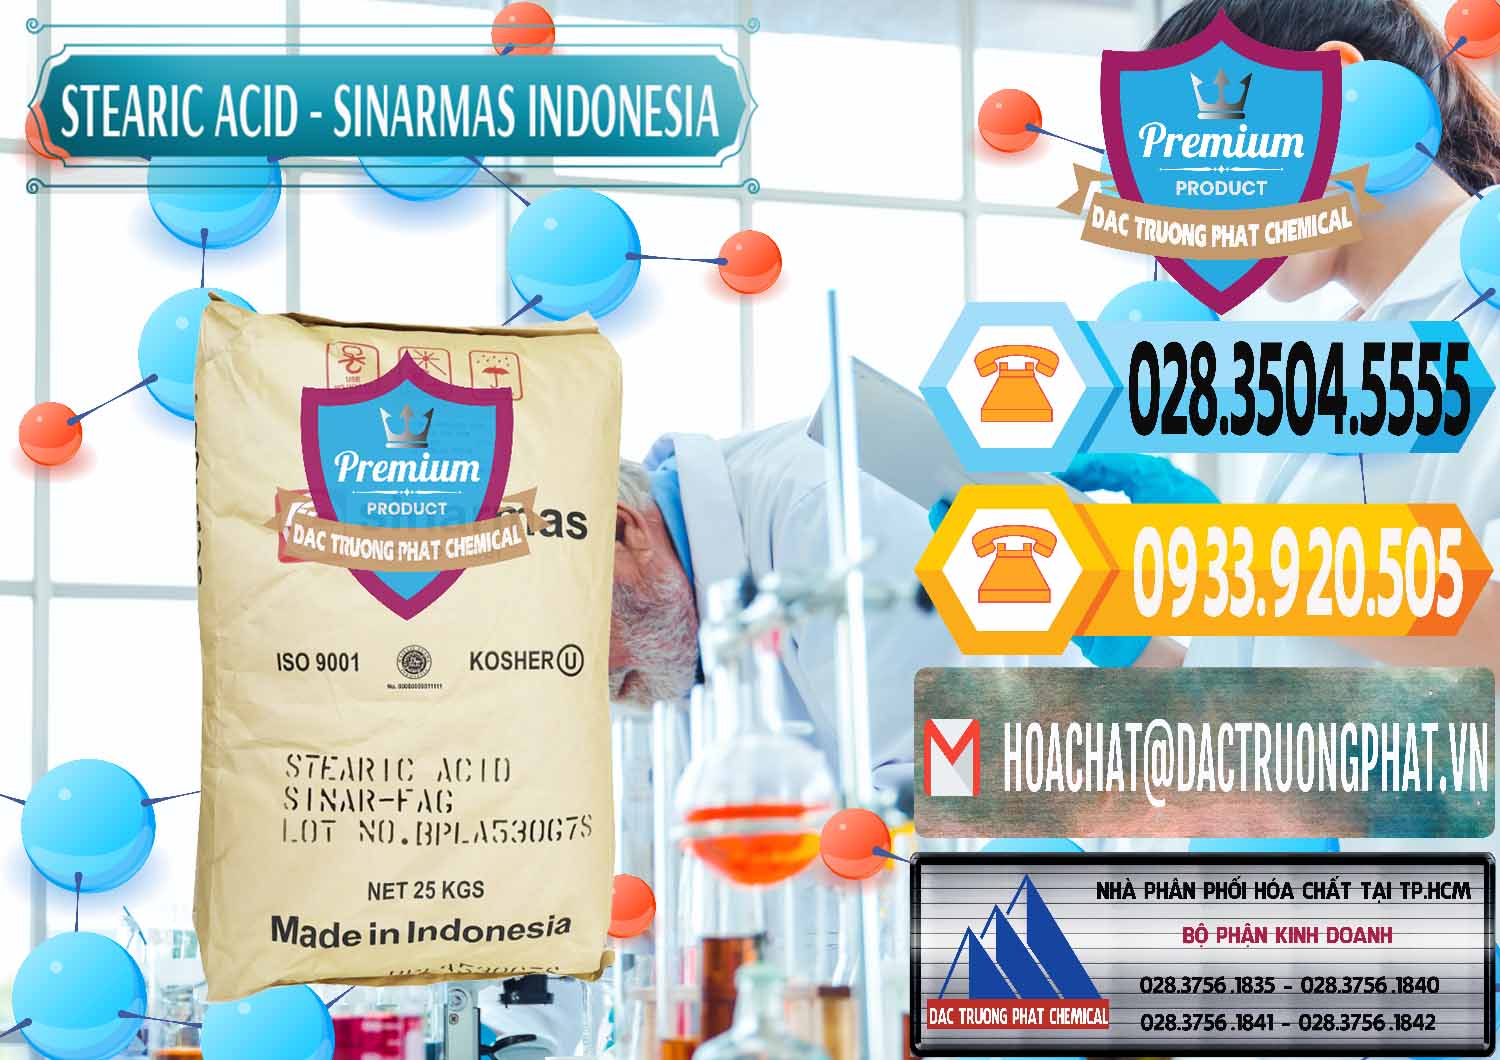 Đơn vị cung ứng và bán Axit Stearic - Stearic Acid Sinarmas Indonesia - 0389 - Nhà nhập khẩu & phân phối hóa chất tại TP.HCM - hoachattayrua.net